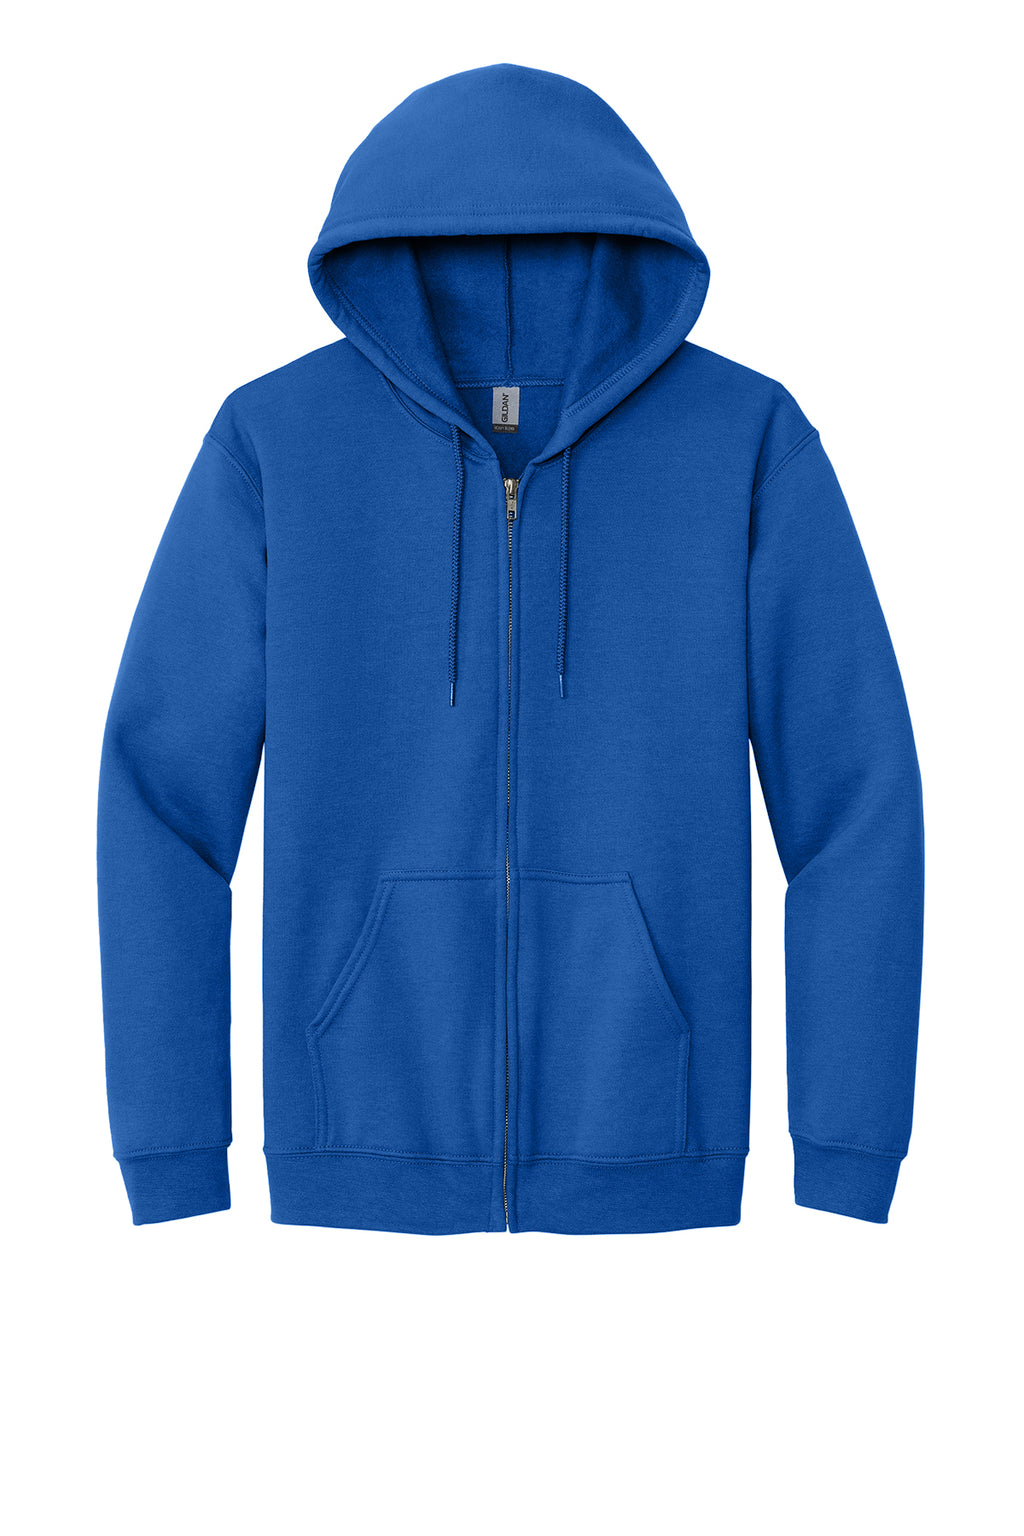 Gildan Full-Zip Hooded Sweatshirt Mens/Unisex Hoodies Royal Blue